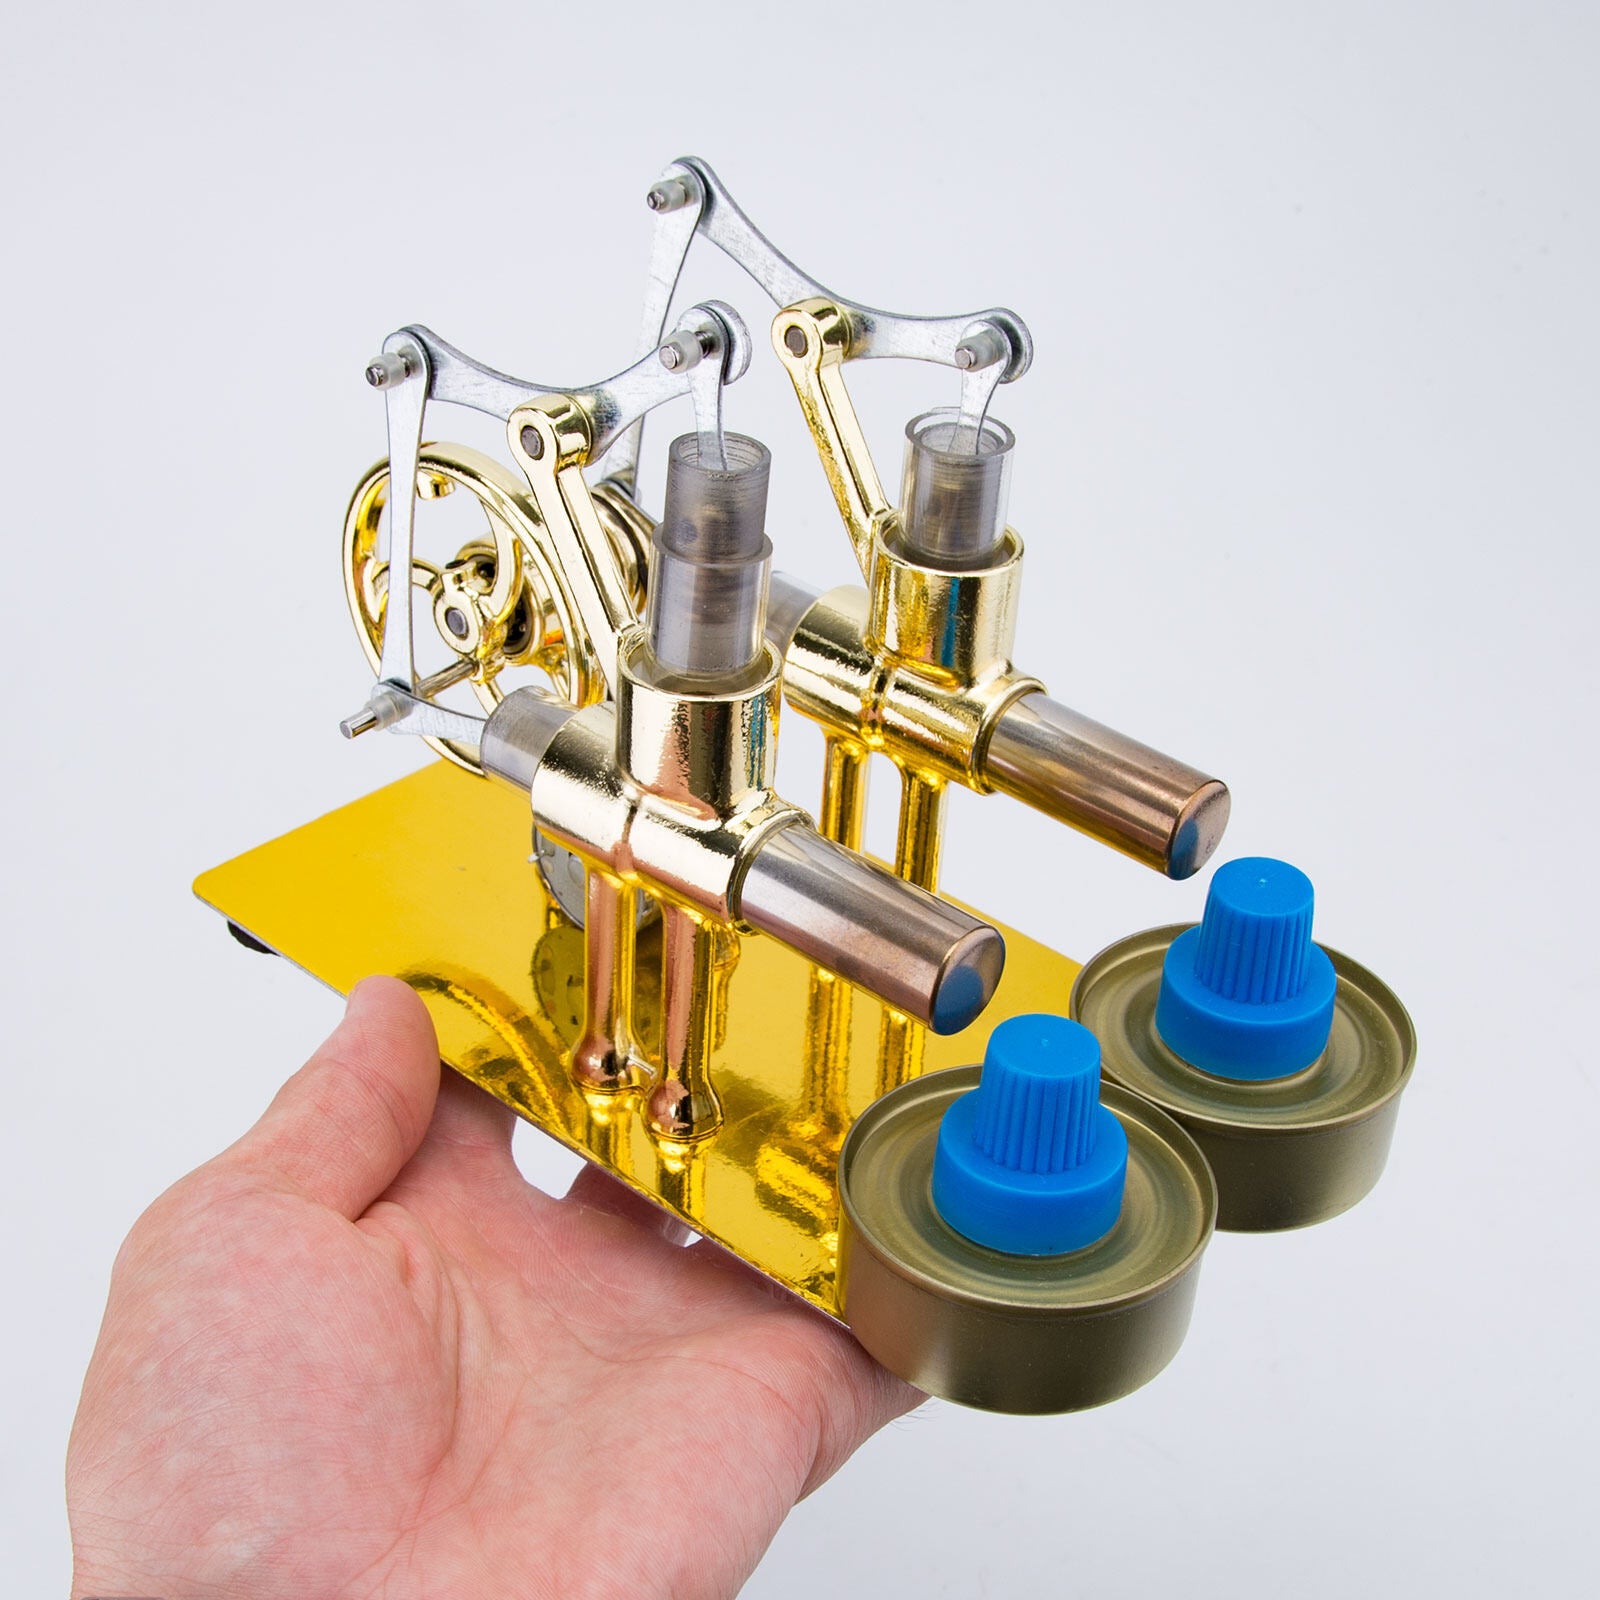 2 Cylinder Stirling Engine Electricity Generator with Bulb Stirling Engine Motor Model enginediyshop